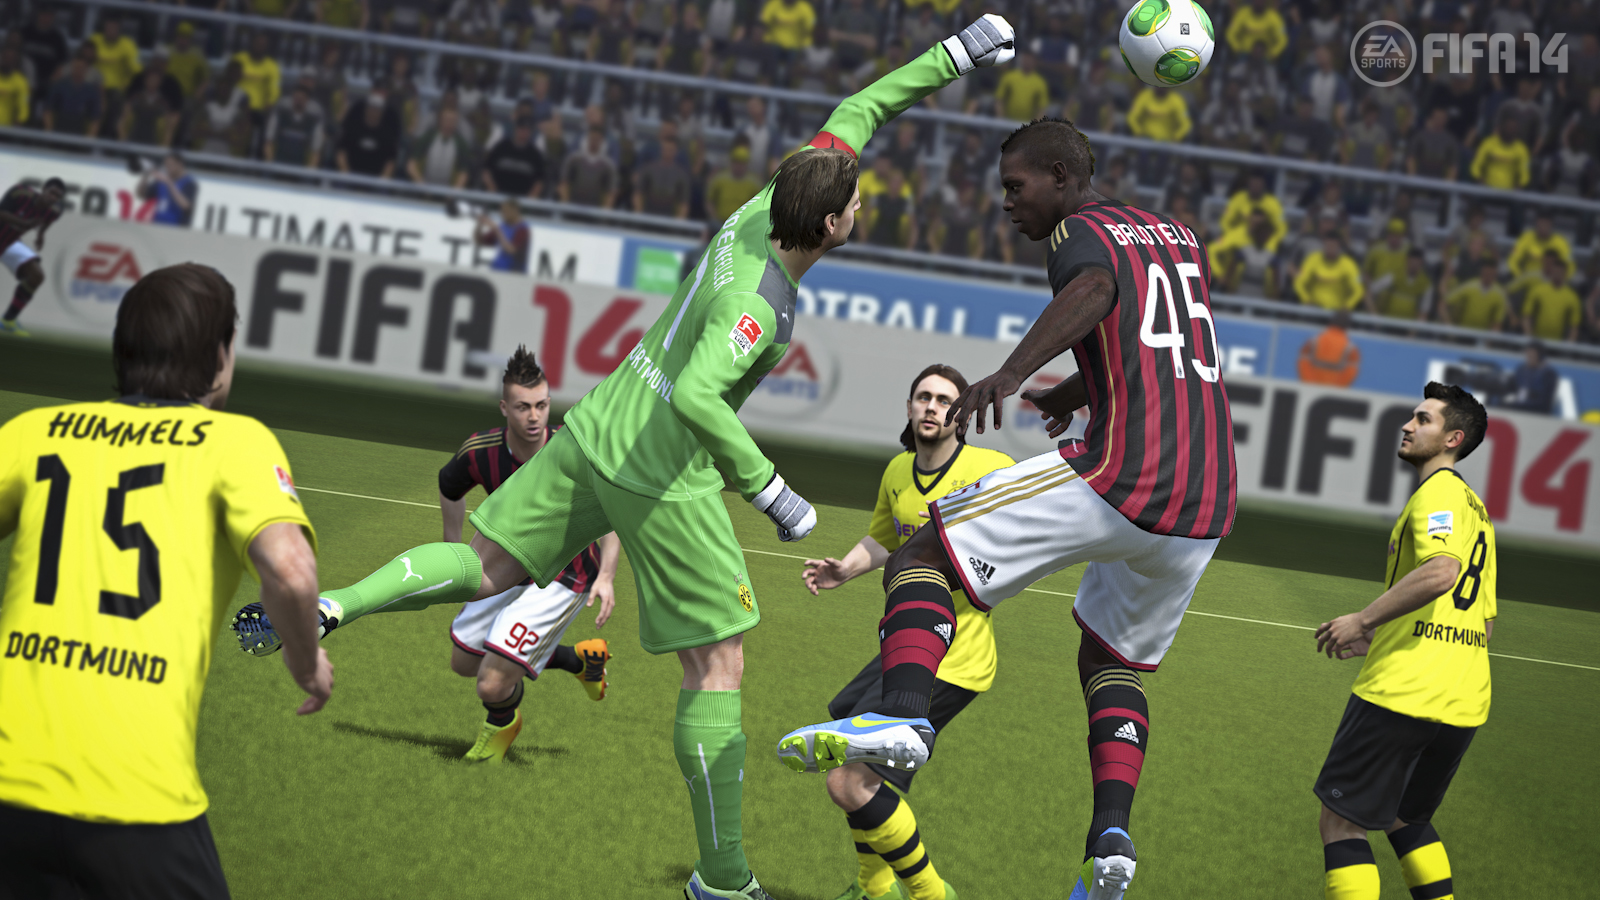 FIFA-14-Gamescom-1